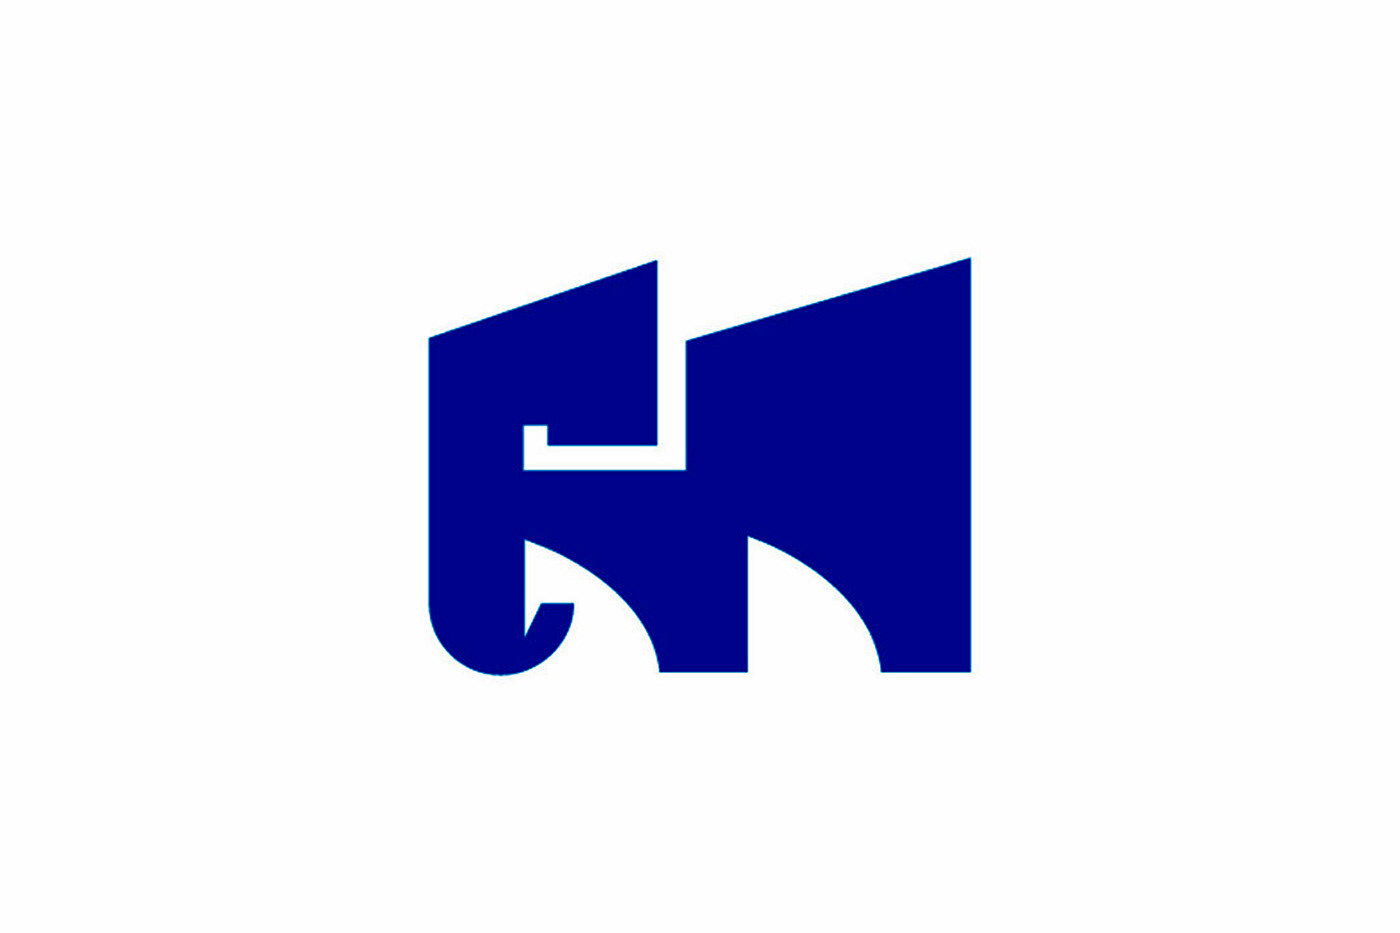 Image may contain: logo